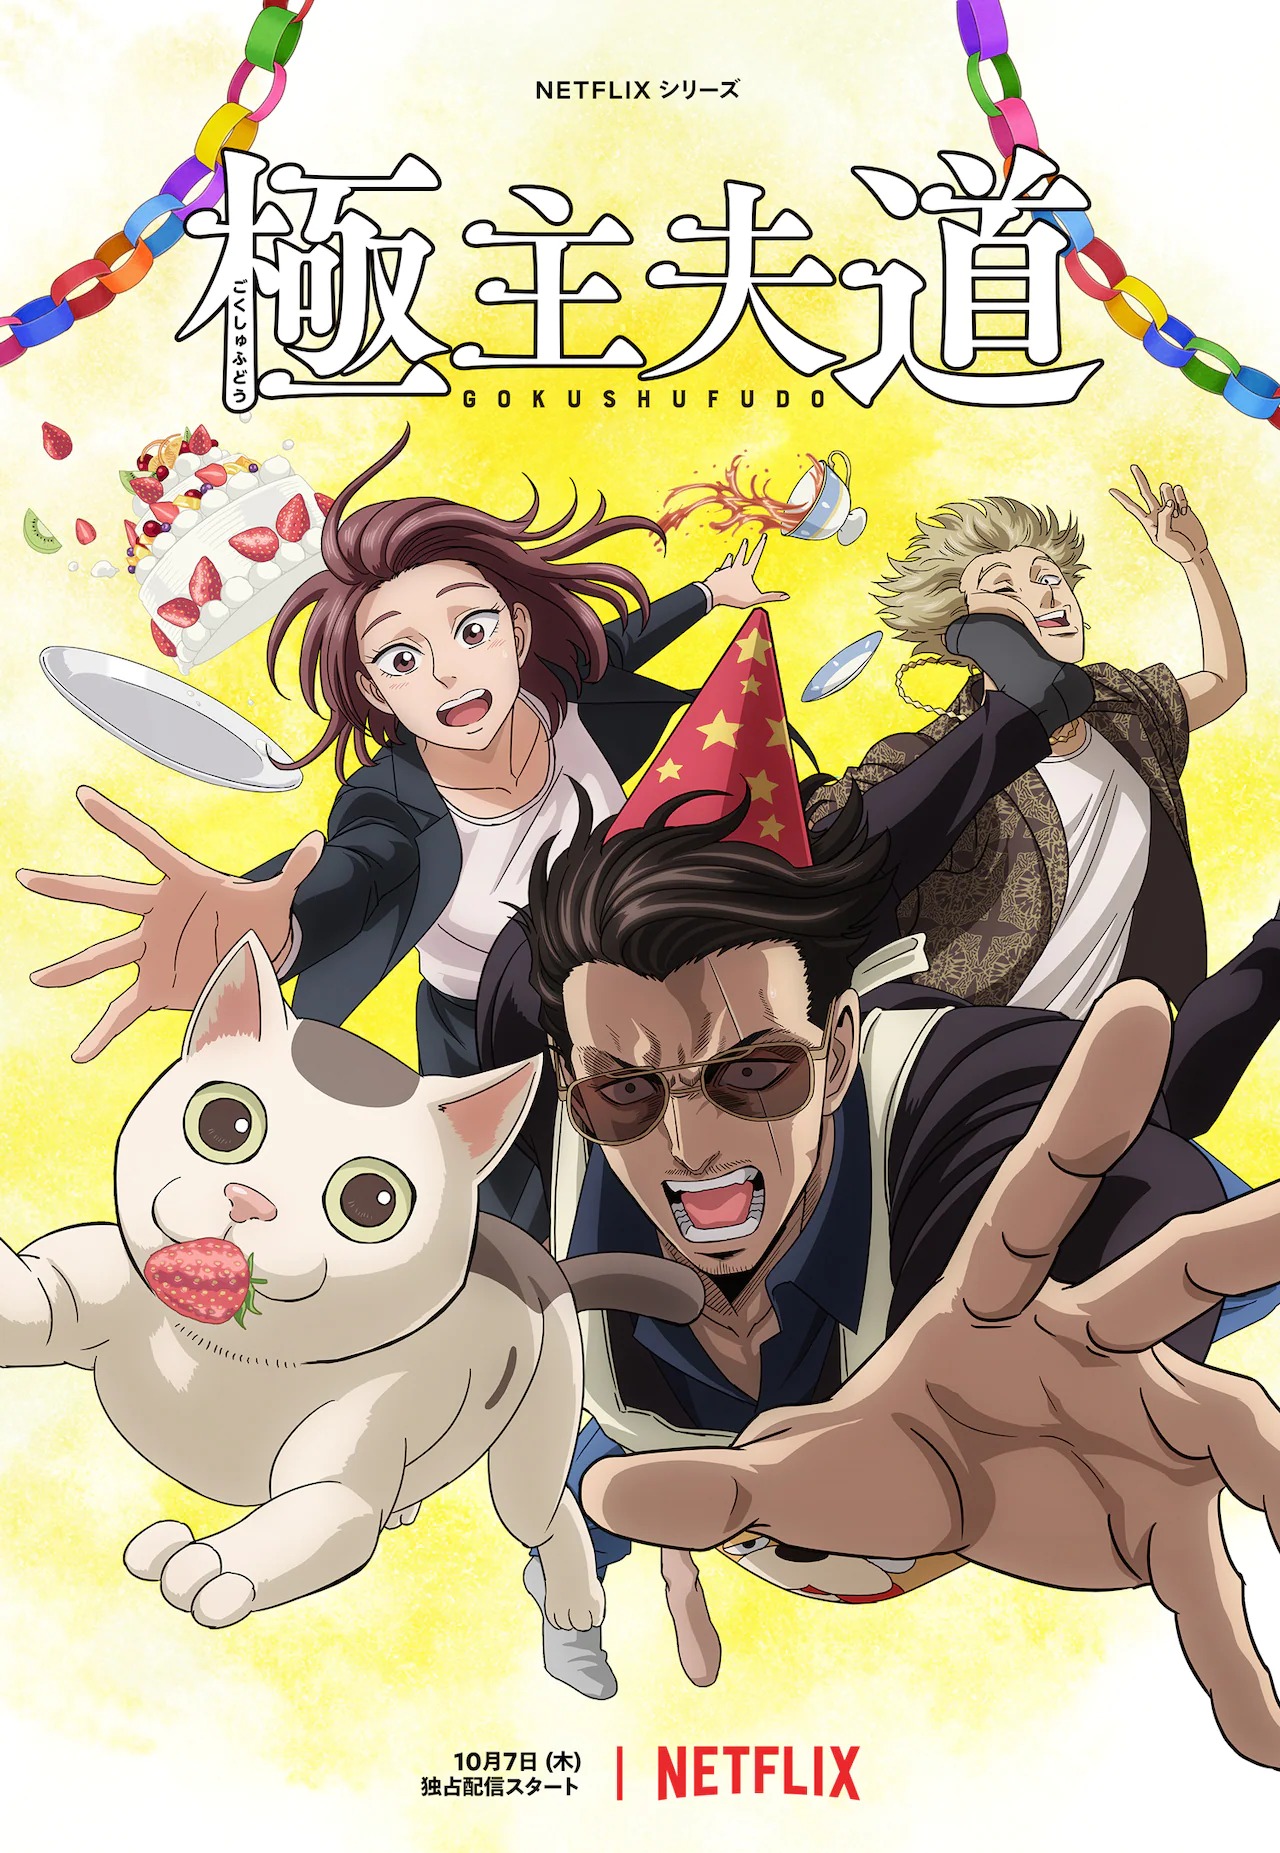 Animes octubre 2021: de Mushoku Tensei a Kimetsu no Yaiba, las